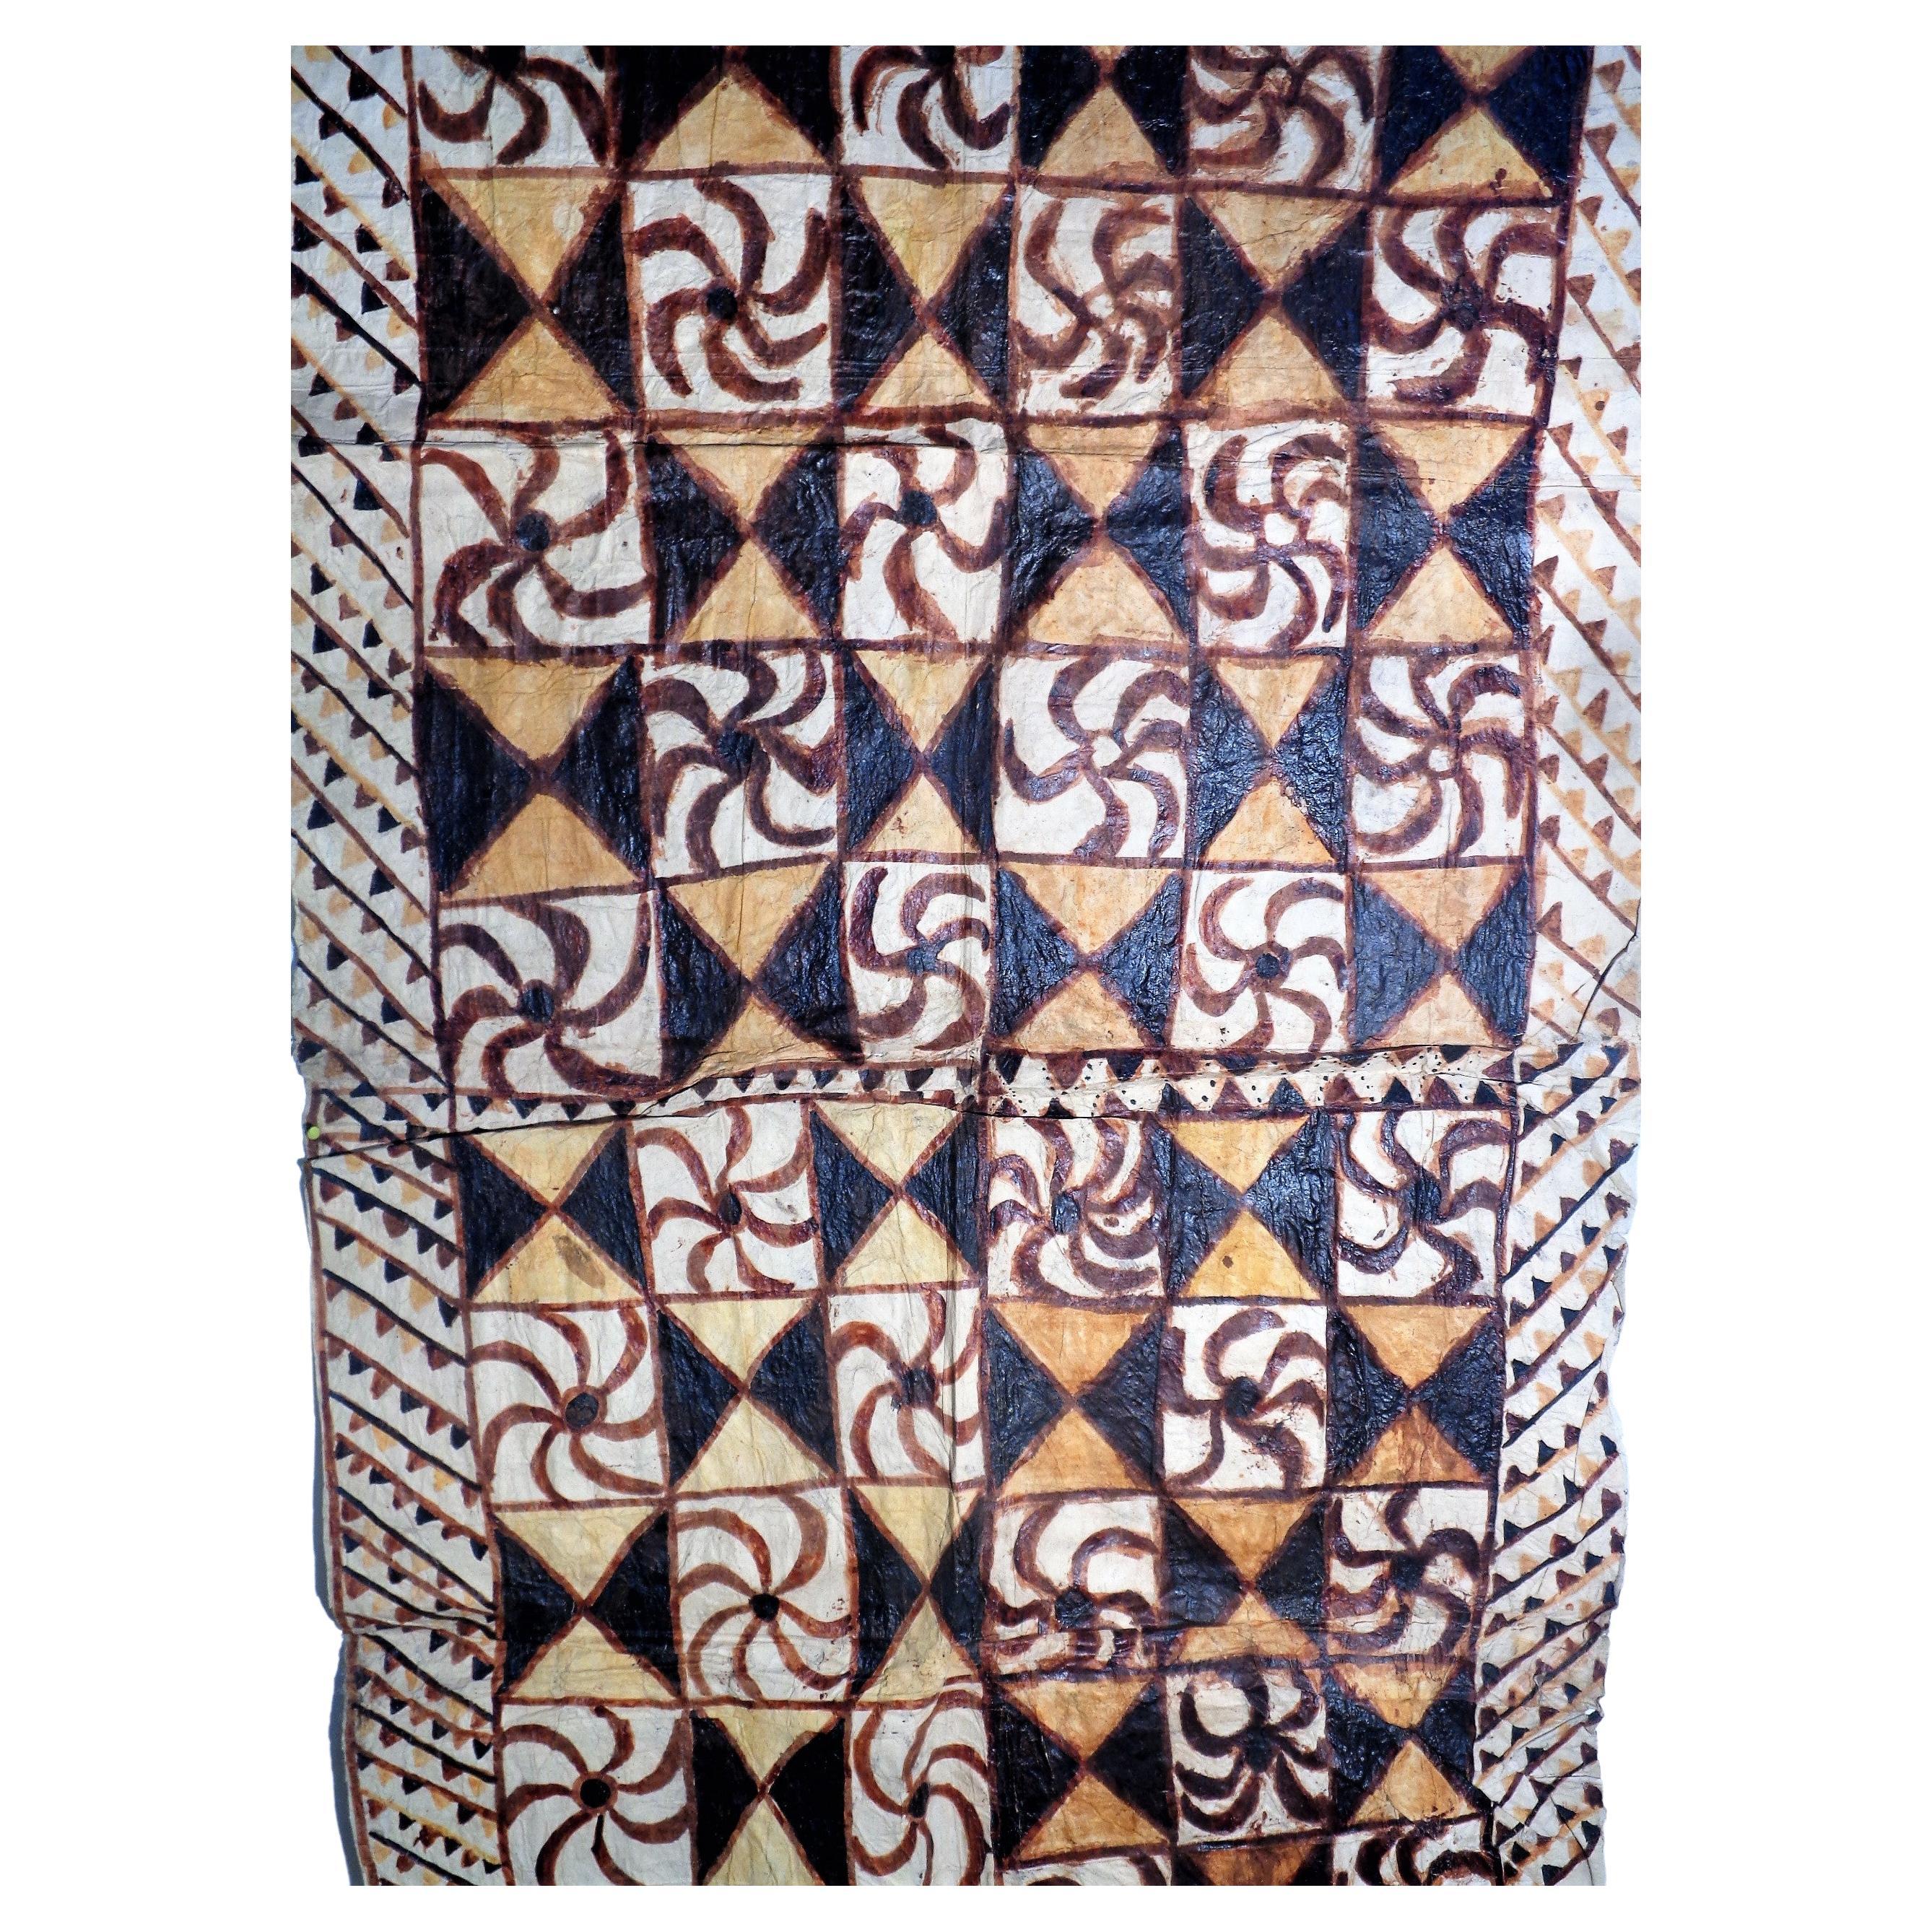 Antiker Samoa Siapo ( `tapa Stoff ) aus der inneren Rinde eines Maulbeerbaumes / frei Hand bemalt ( Siapo Mamanu ) mit den natürlichen Farbstoffen von Pflanzen, Bäumen und Tonen. Dieses große Tapa-Tuch stammt aus der Familie von William L. Buchanan